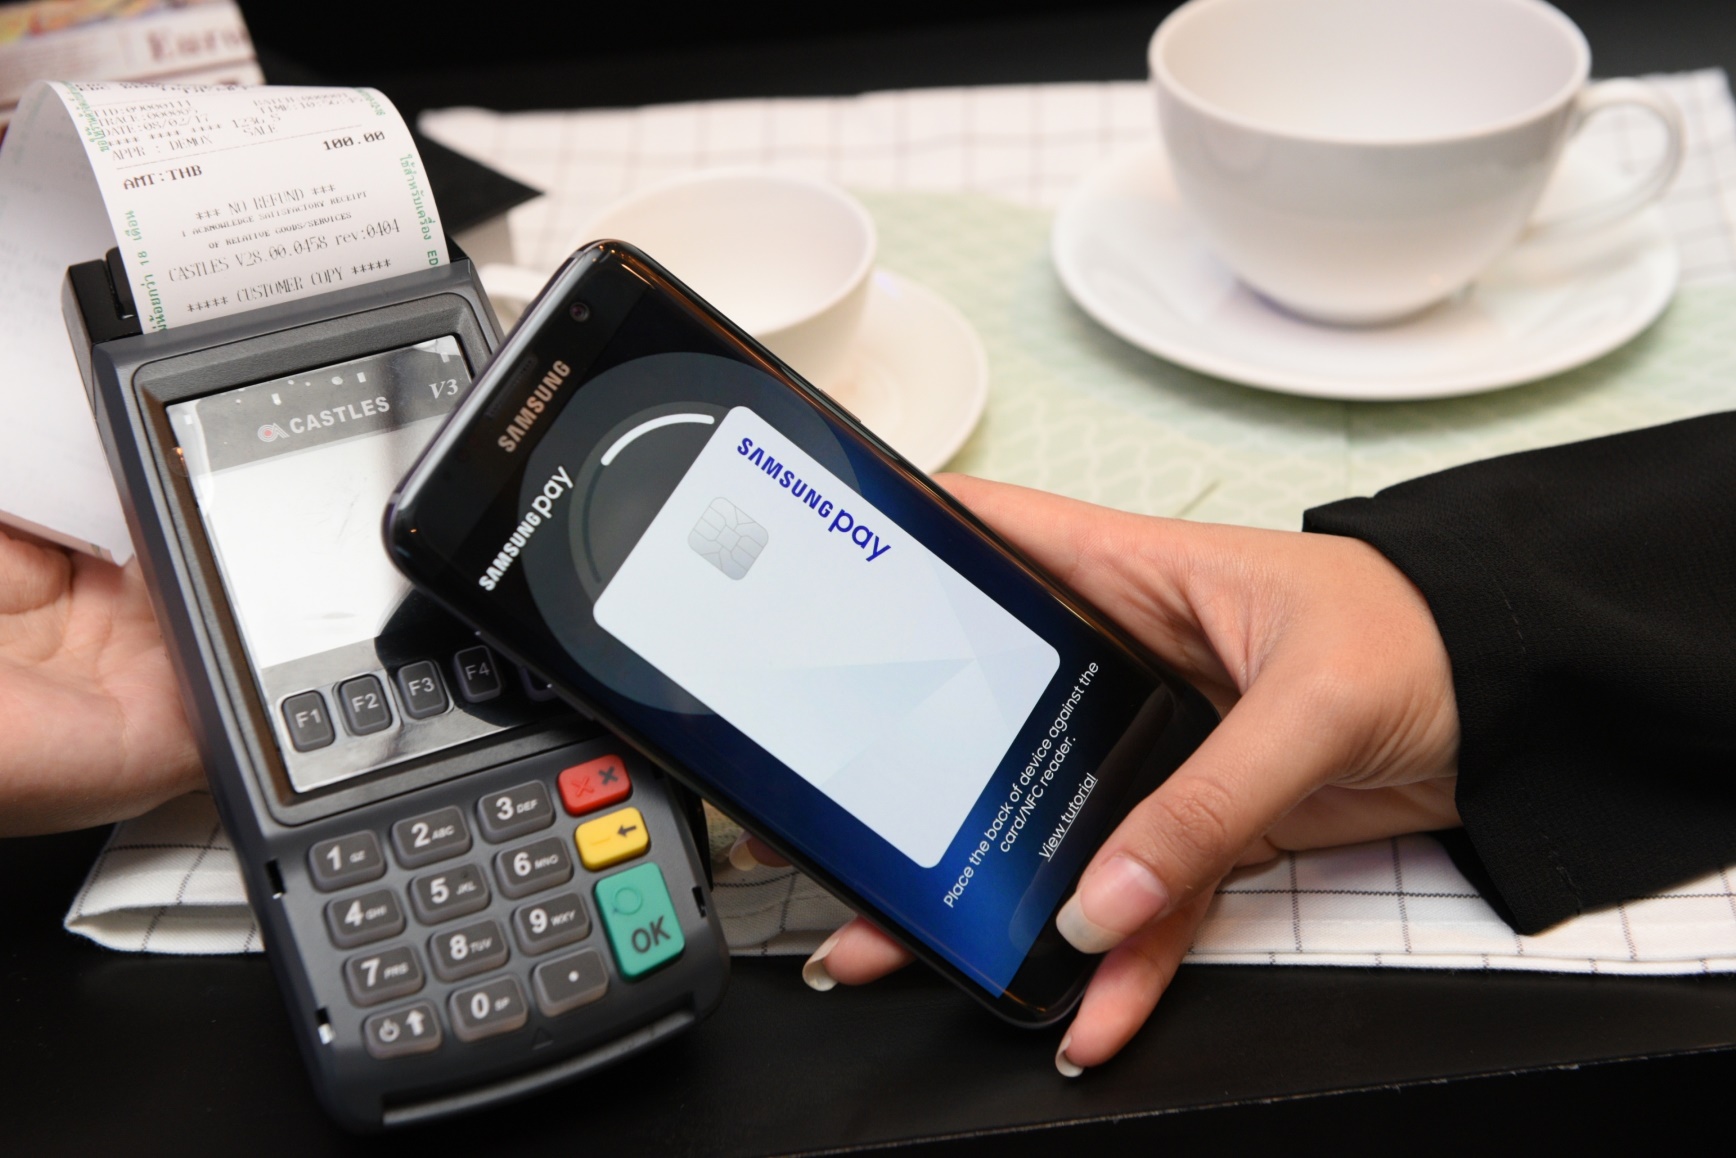 เอาด้วย! Samsung Pay ประกาศจะเปิดตัวบัตรเดบิตของตัวเองในเดือนมิถุนายนนี้